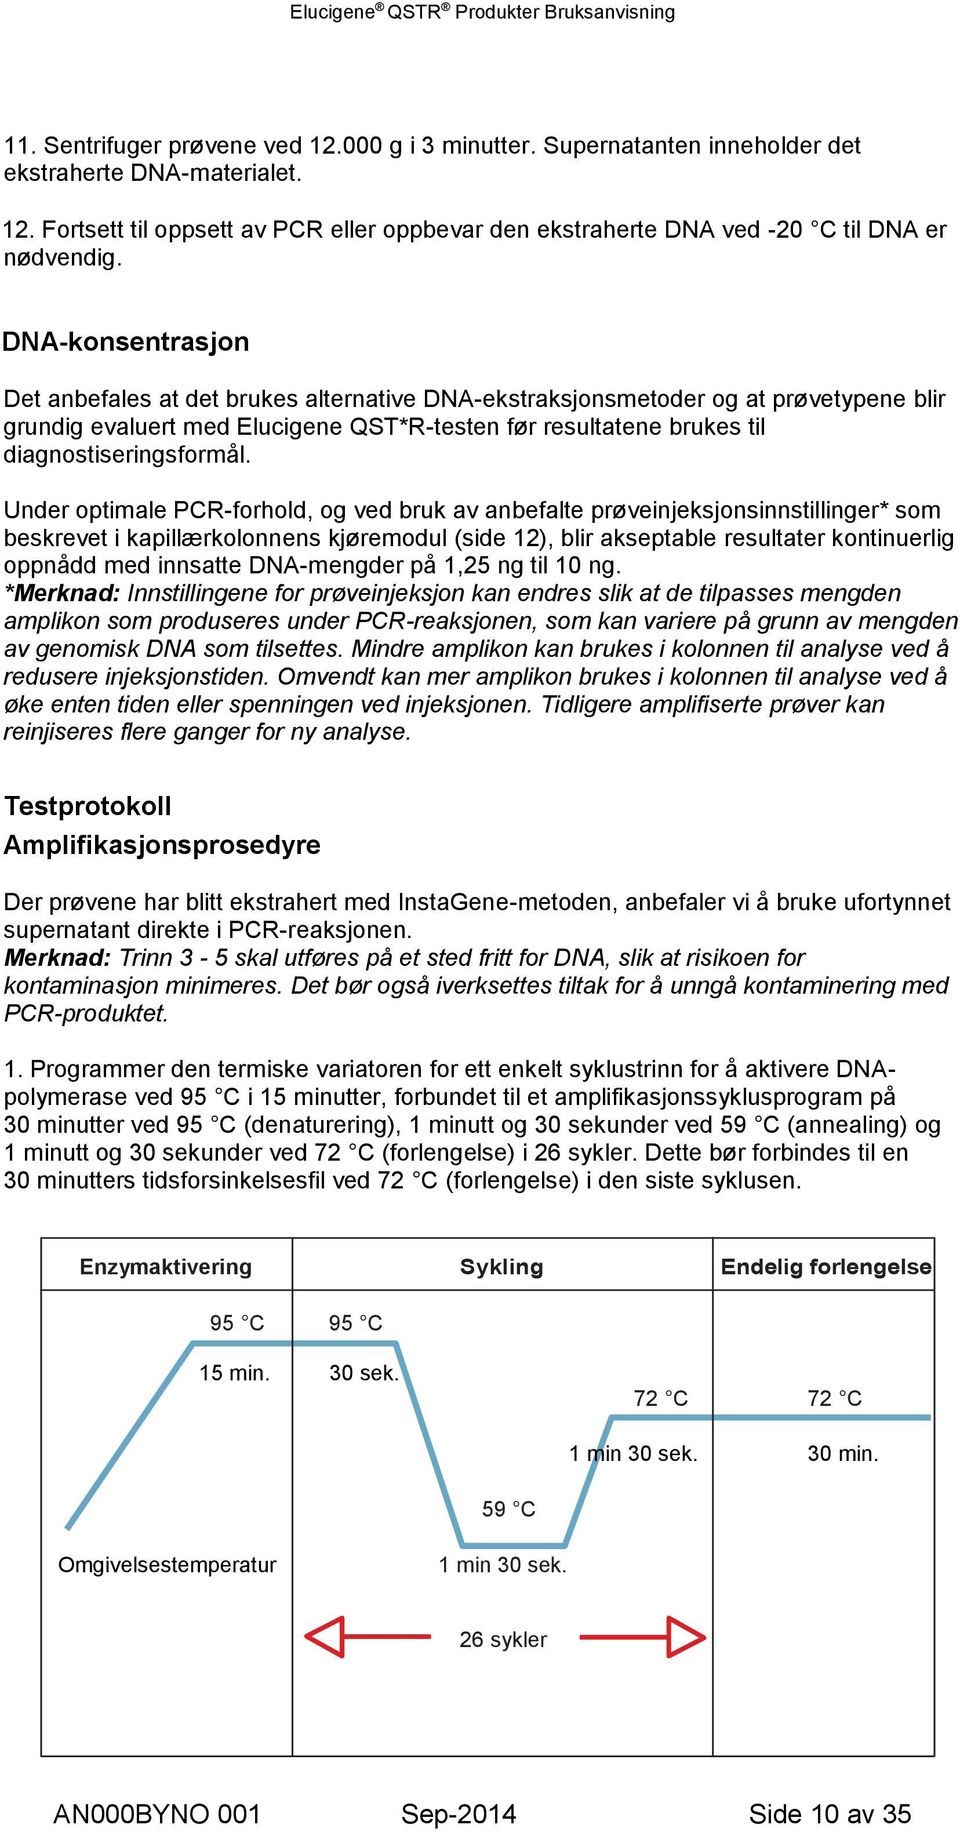 Under optimale PCR-forhold, og ved bruk av anbefalte prøveinjeksjonsinnstillinger* som beskrevet i kapillærkolonnens kjøremodul (side 12), blir akseptable resultater kontinuerlig oppnådd med innsatte